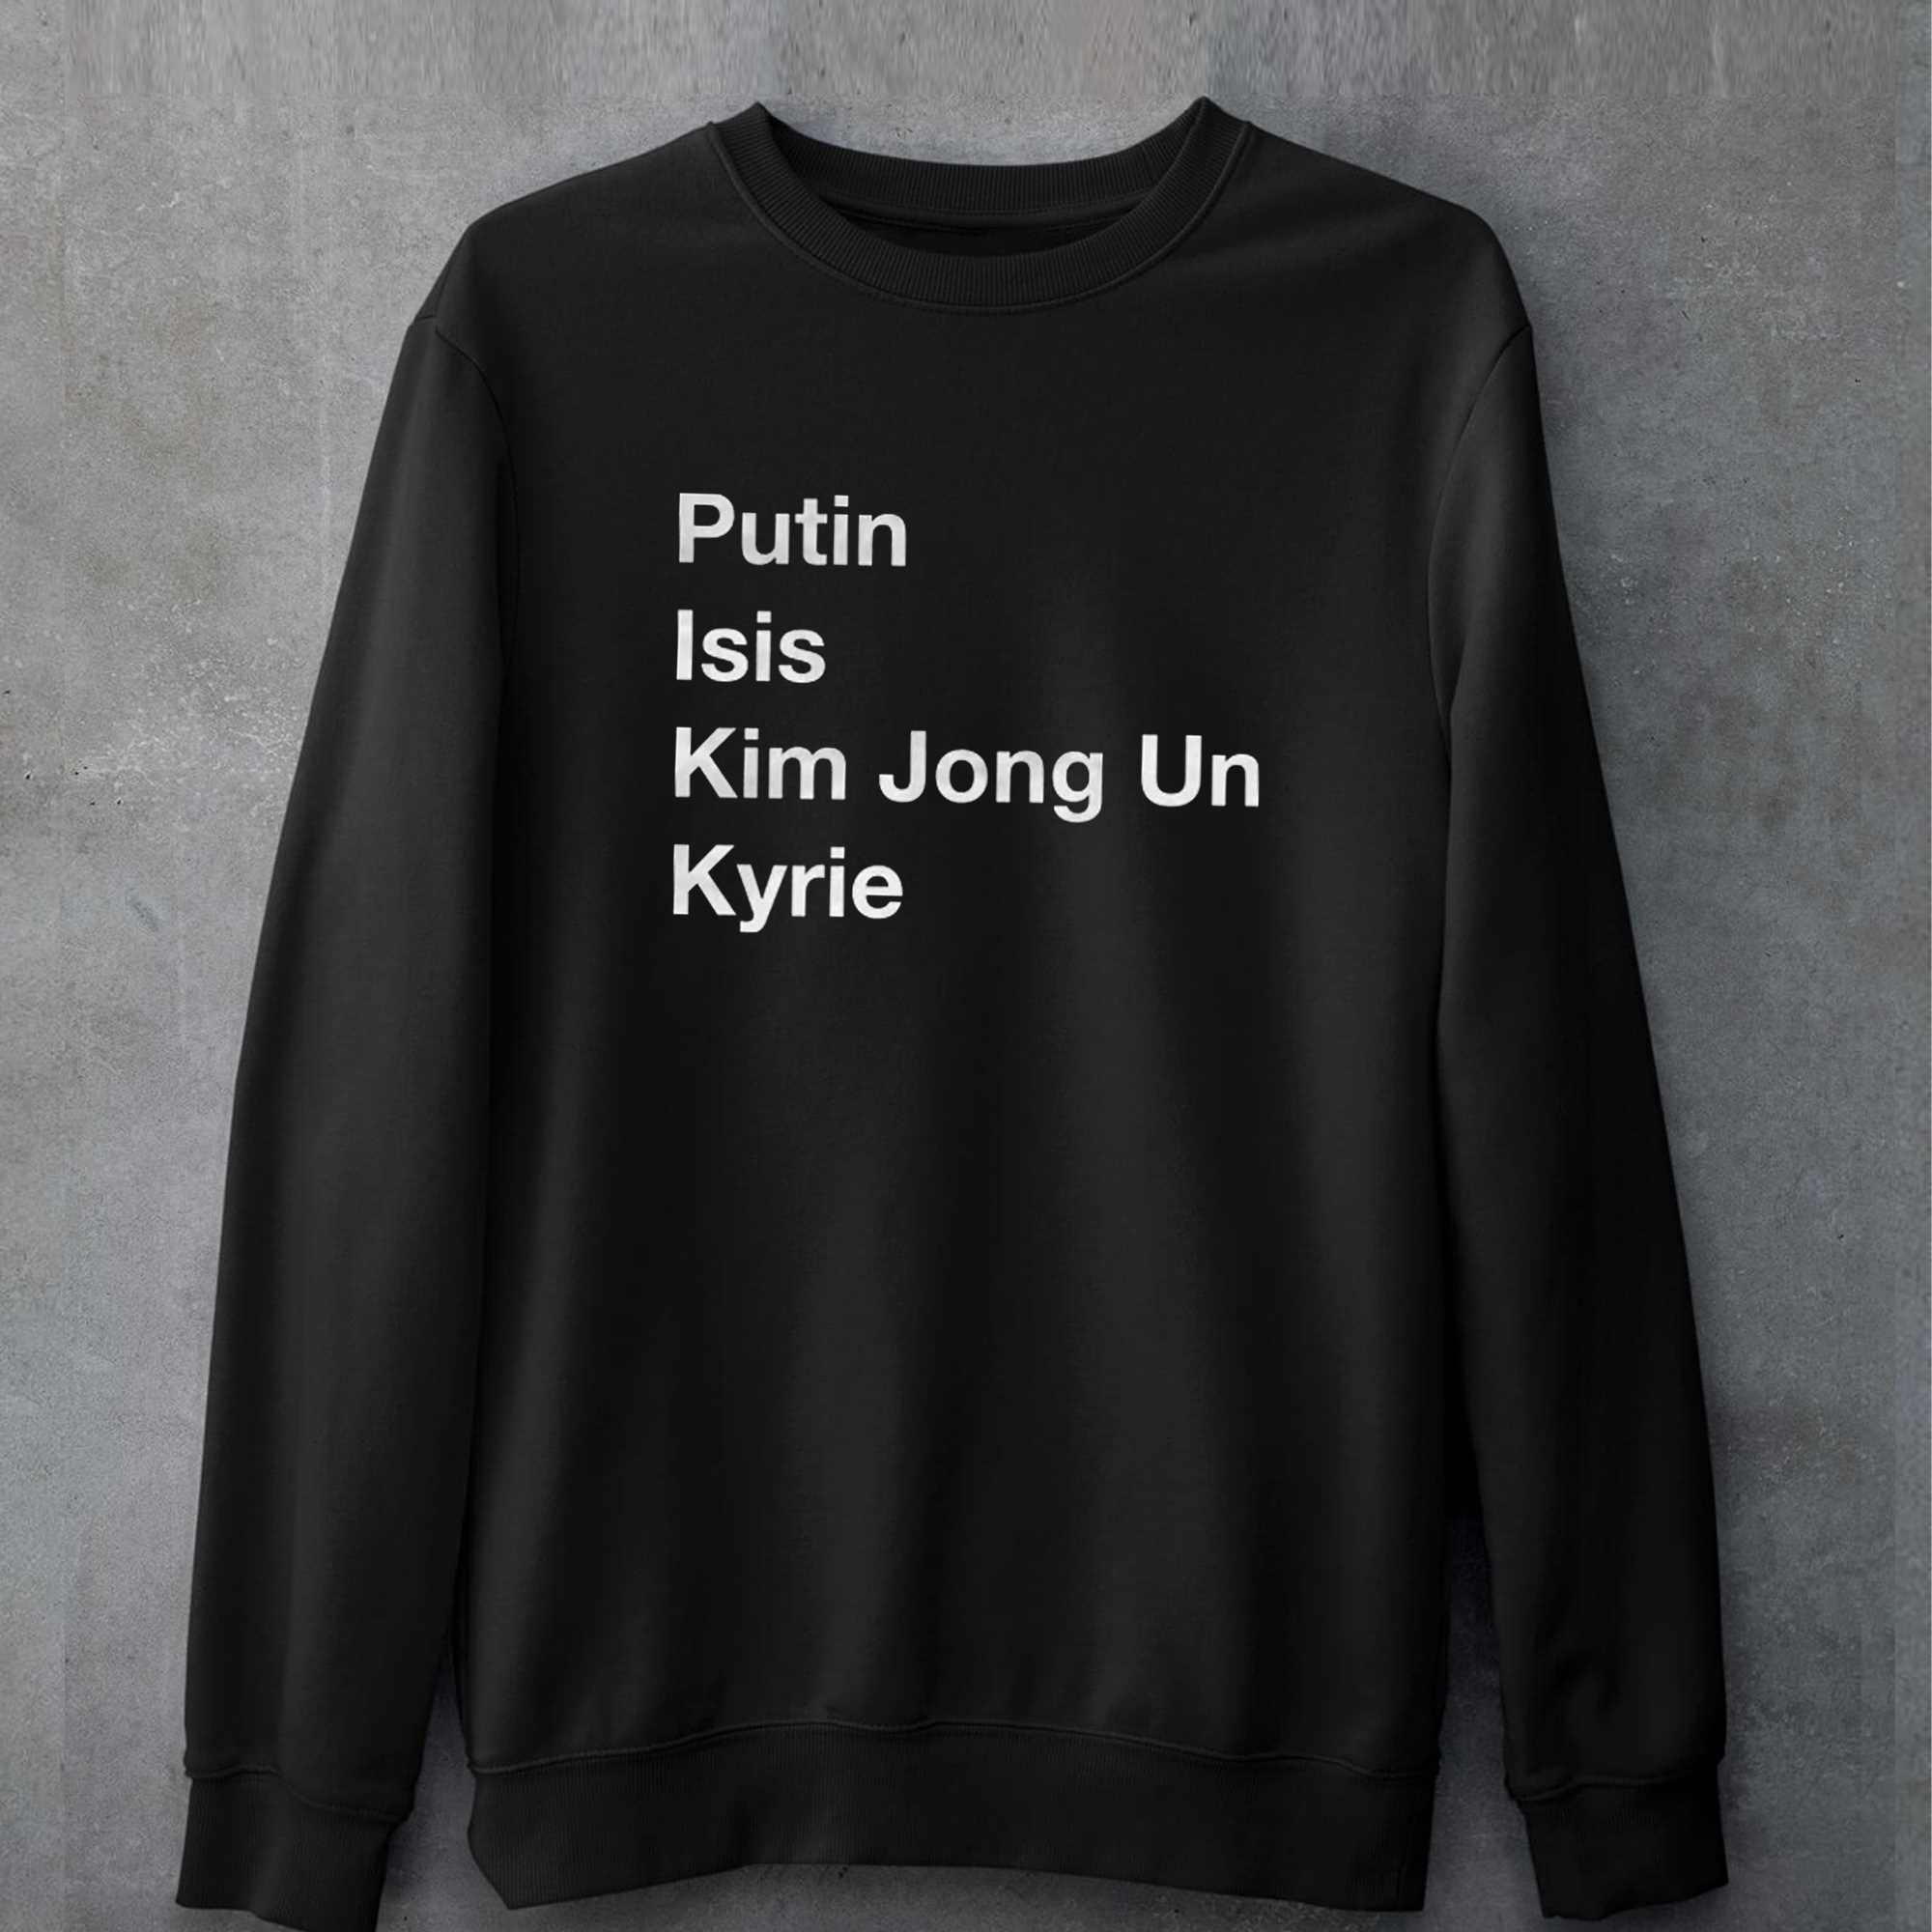 Putin Isis Kim Jong Un Kyrie T-shirt 